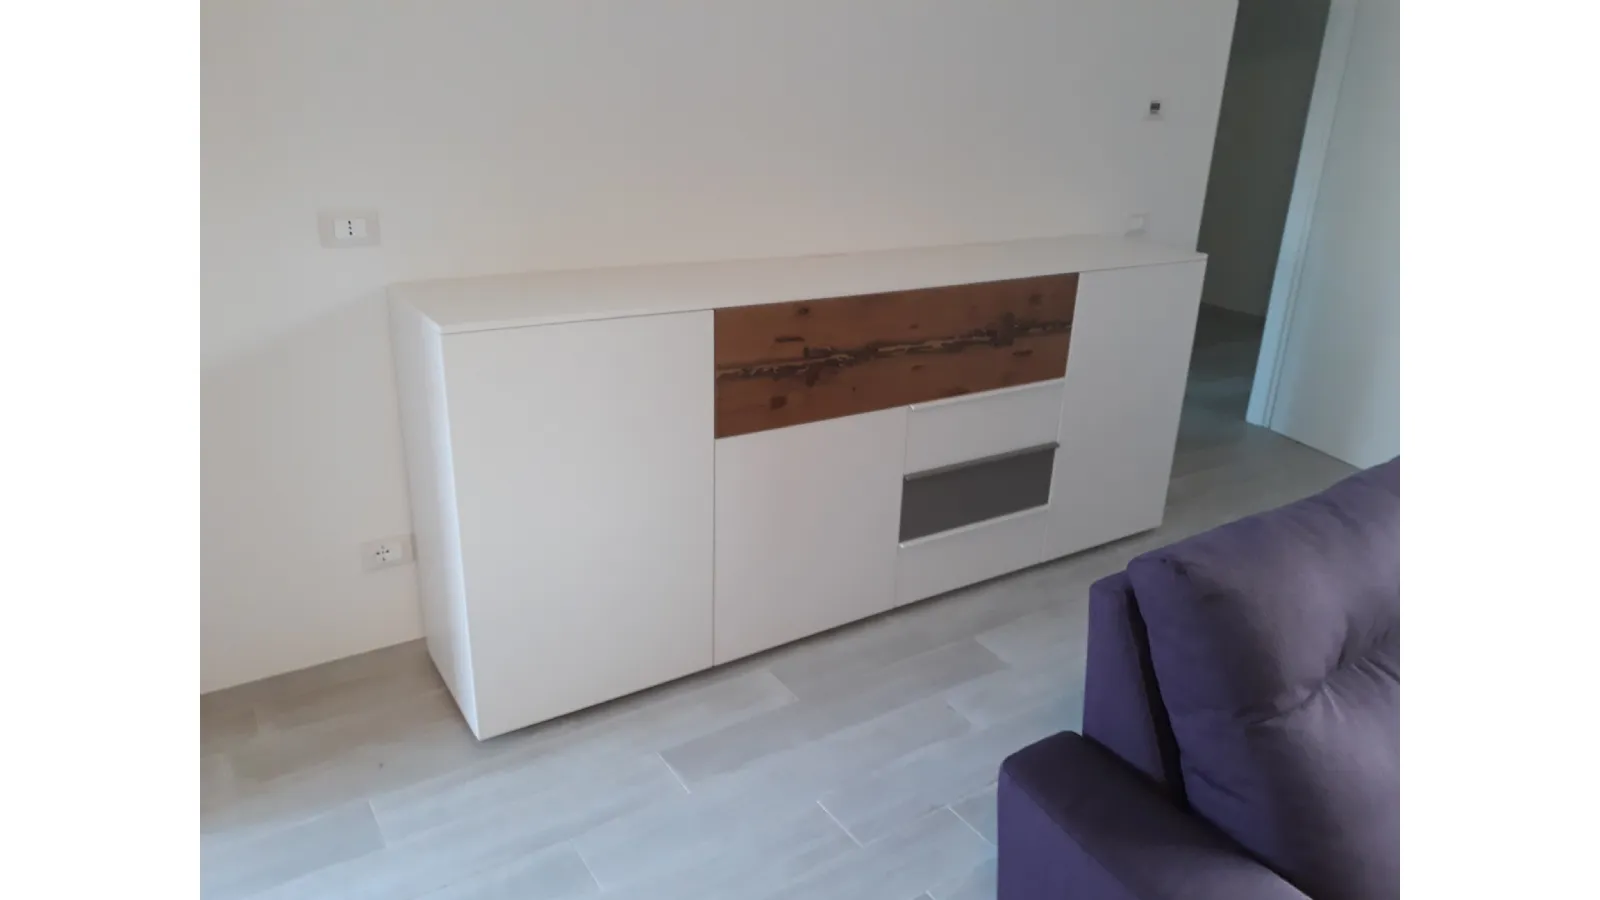 soggiorno moderno bianco e legno 